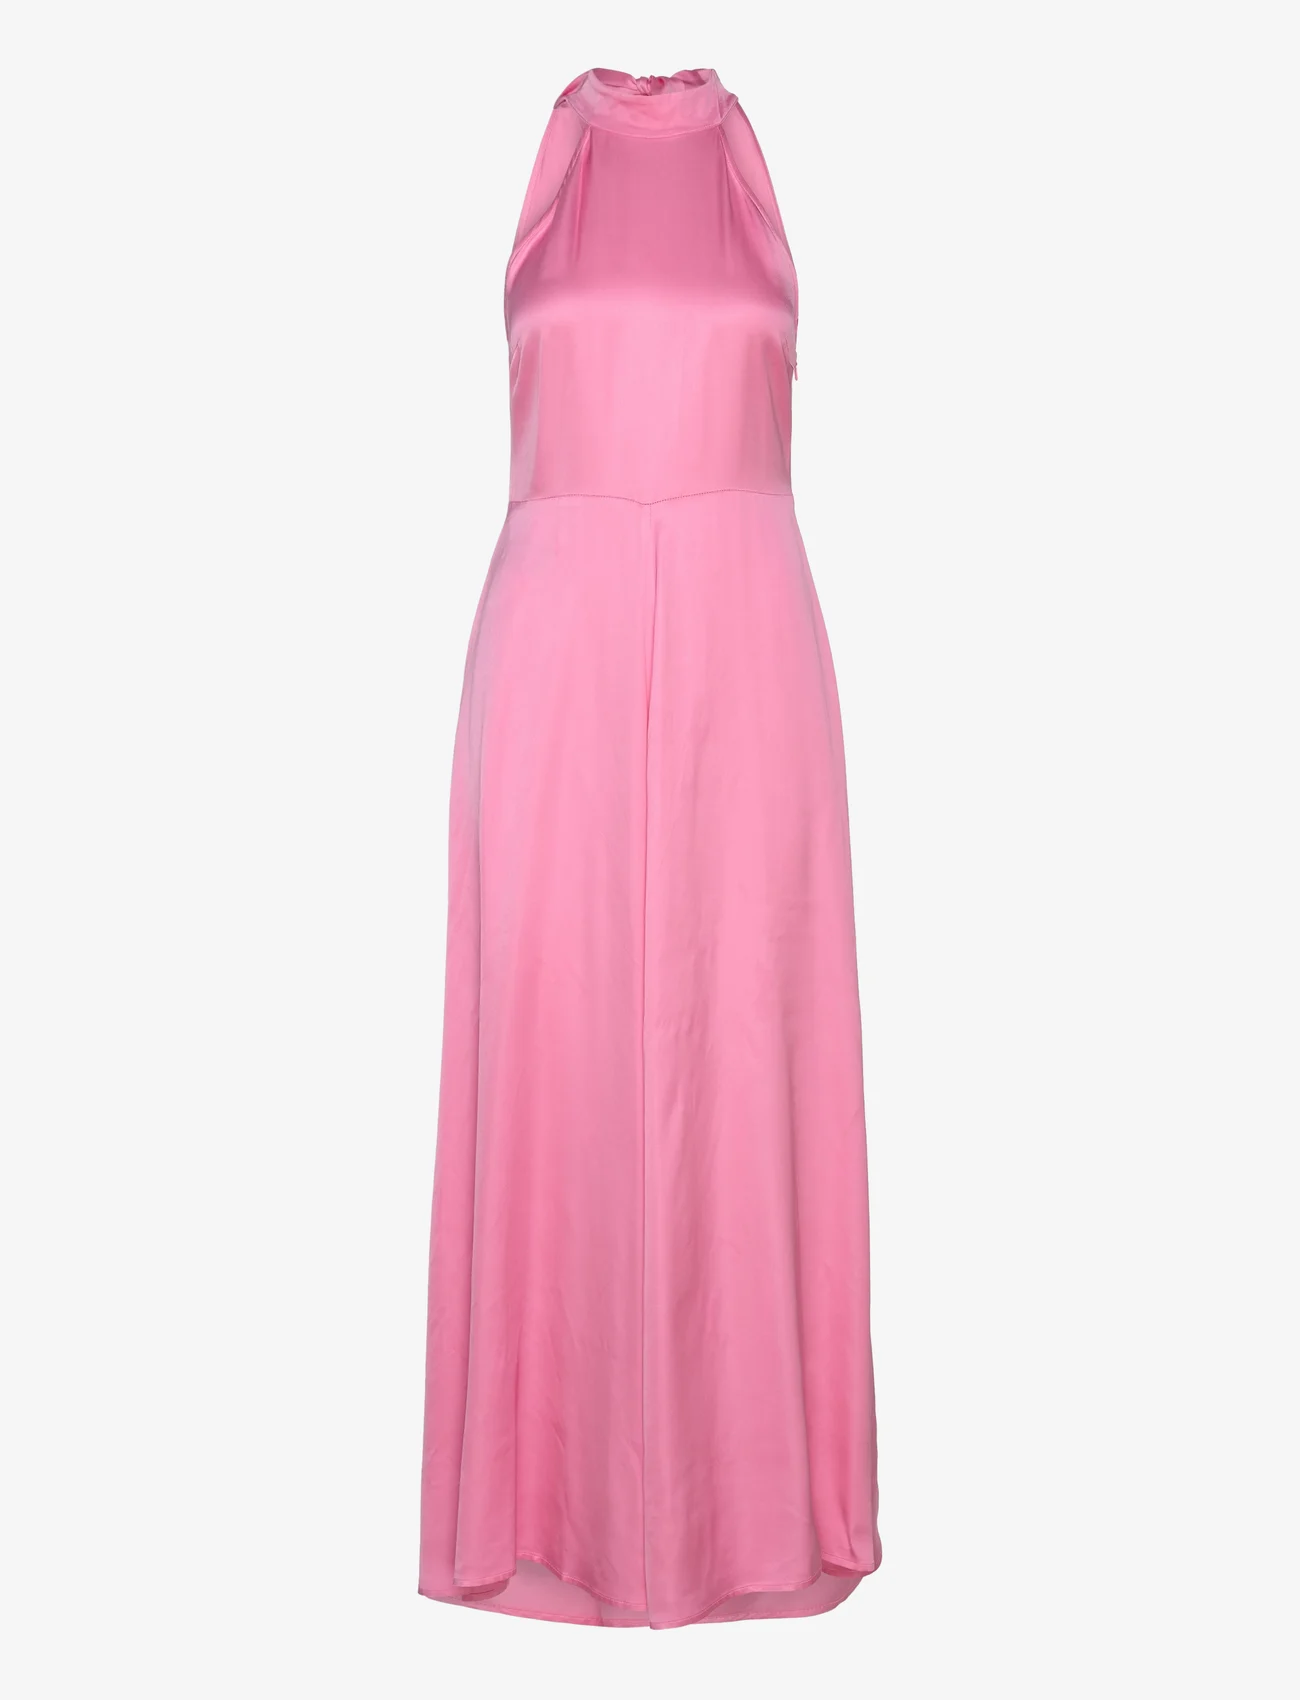 Selected Femme - SLFREGINA HALTERNECK ANKLE DRESS B - odzież imprezowa w cenach outletowych - rosebloom - 0